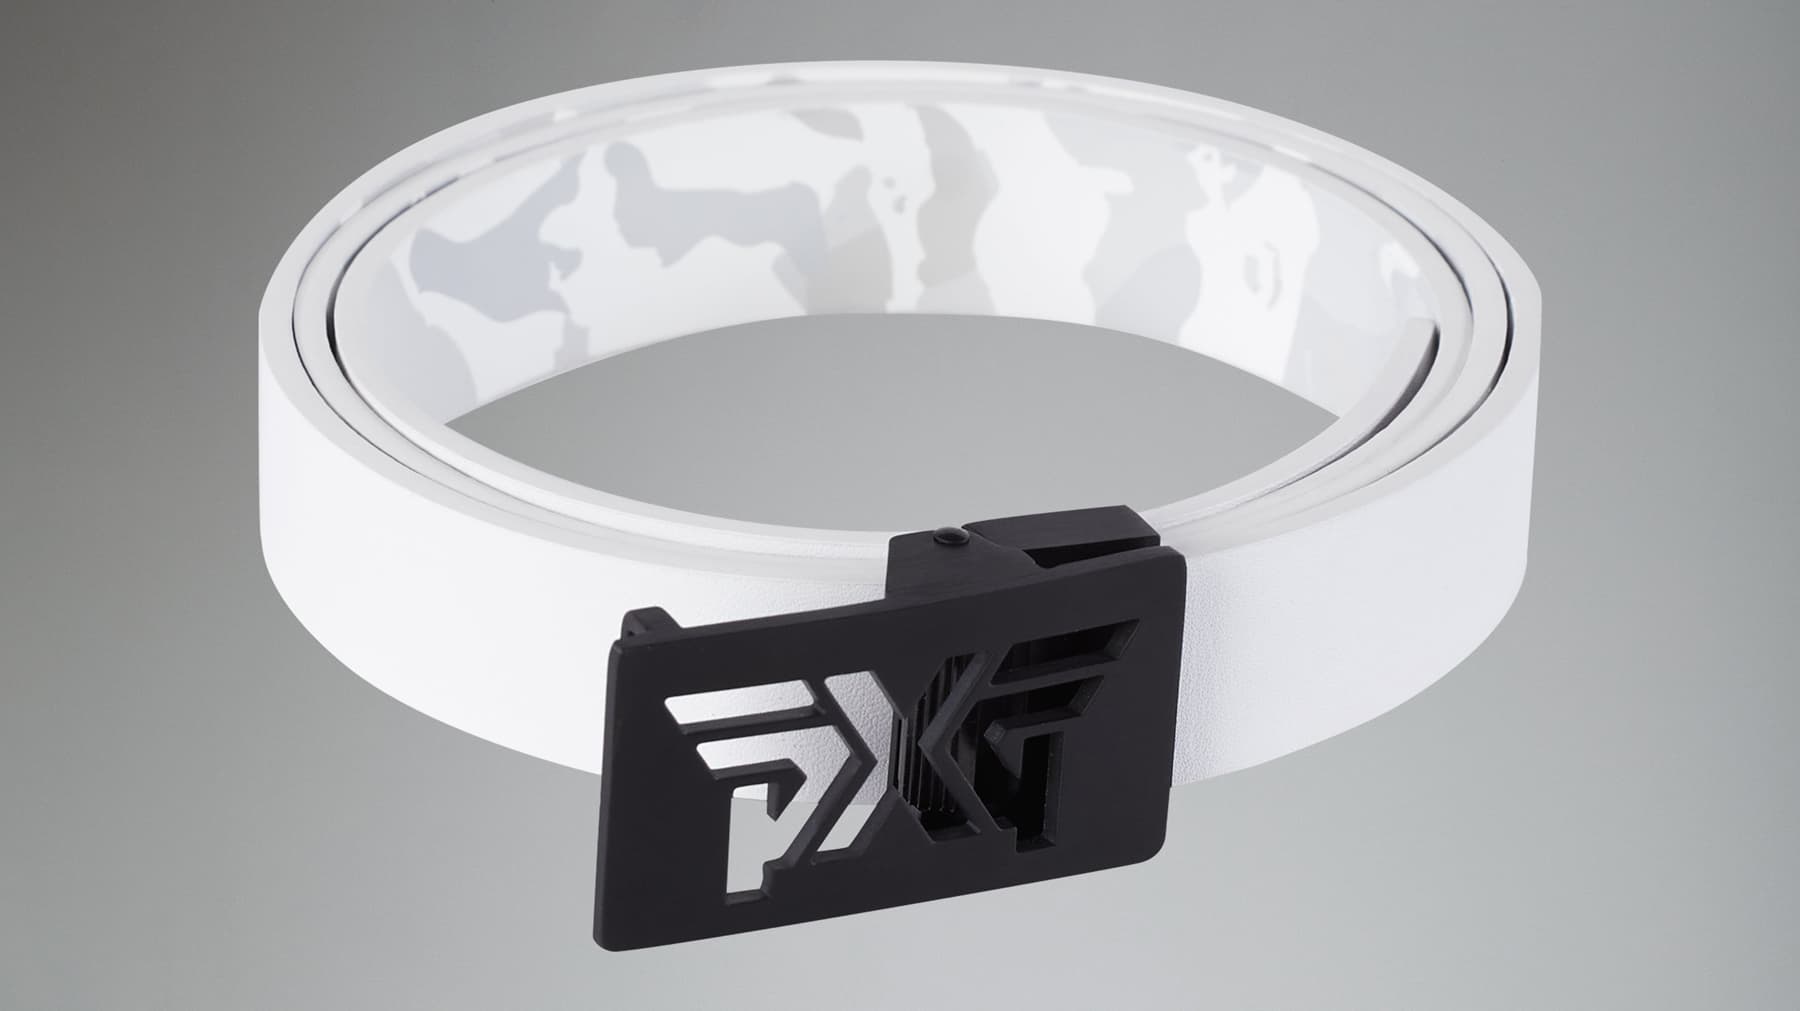 Buy All-Over Logo PXG Belt